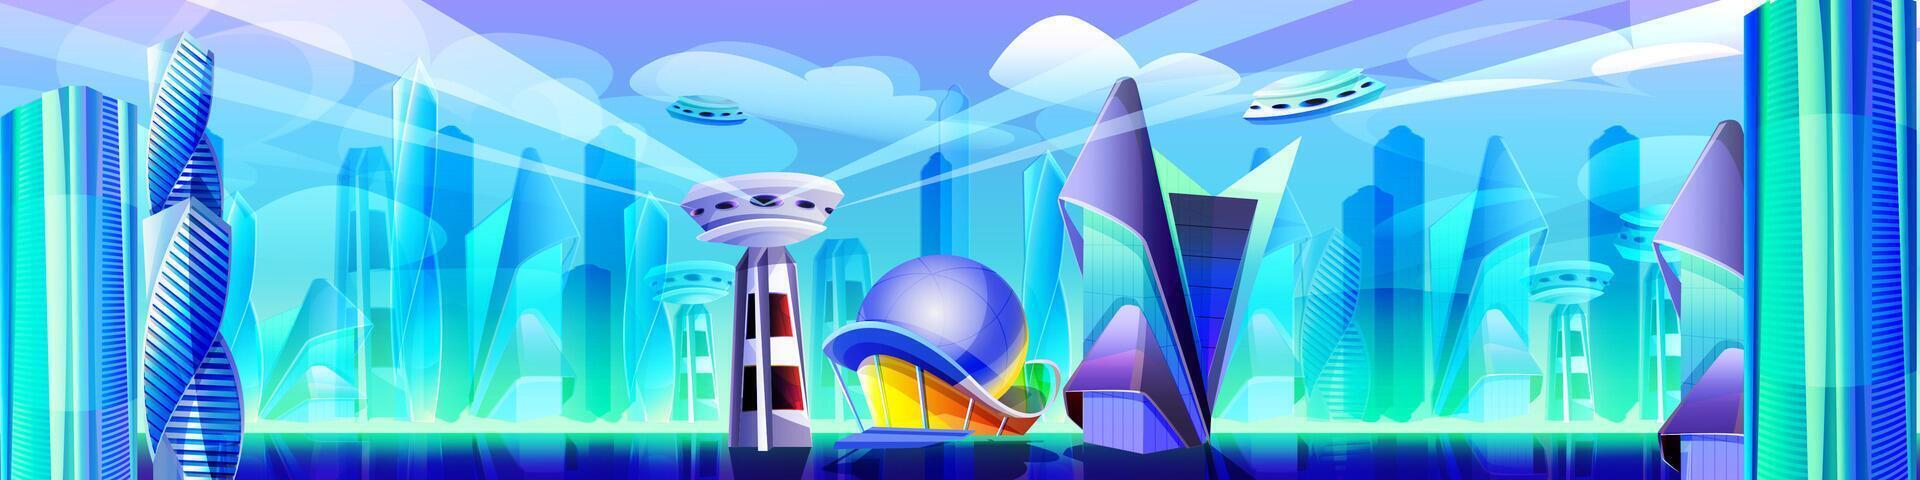 framtida stad med trogen glas byggnader av ovanlig former. tecknad serie utomjording urban stadsbild. modern stil arkitektur torn, skyskrapor. metropol landskap med flygande stad delar och rymdskepp. vektor